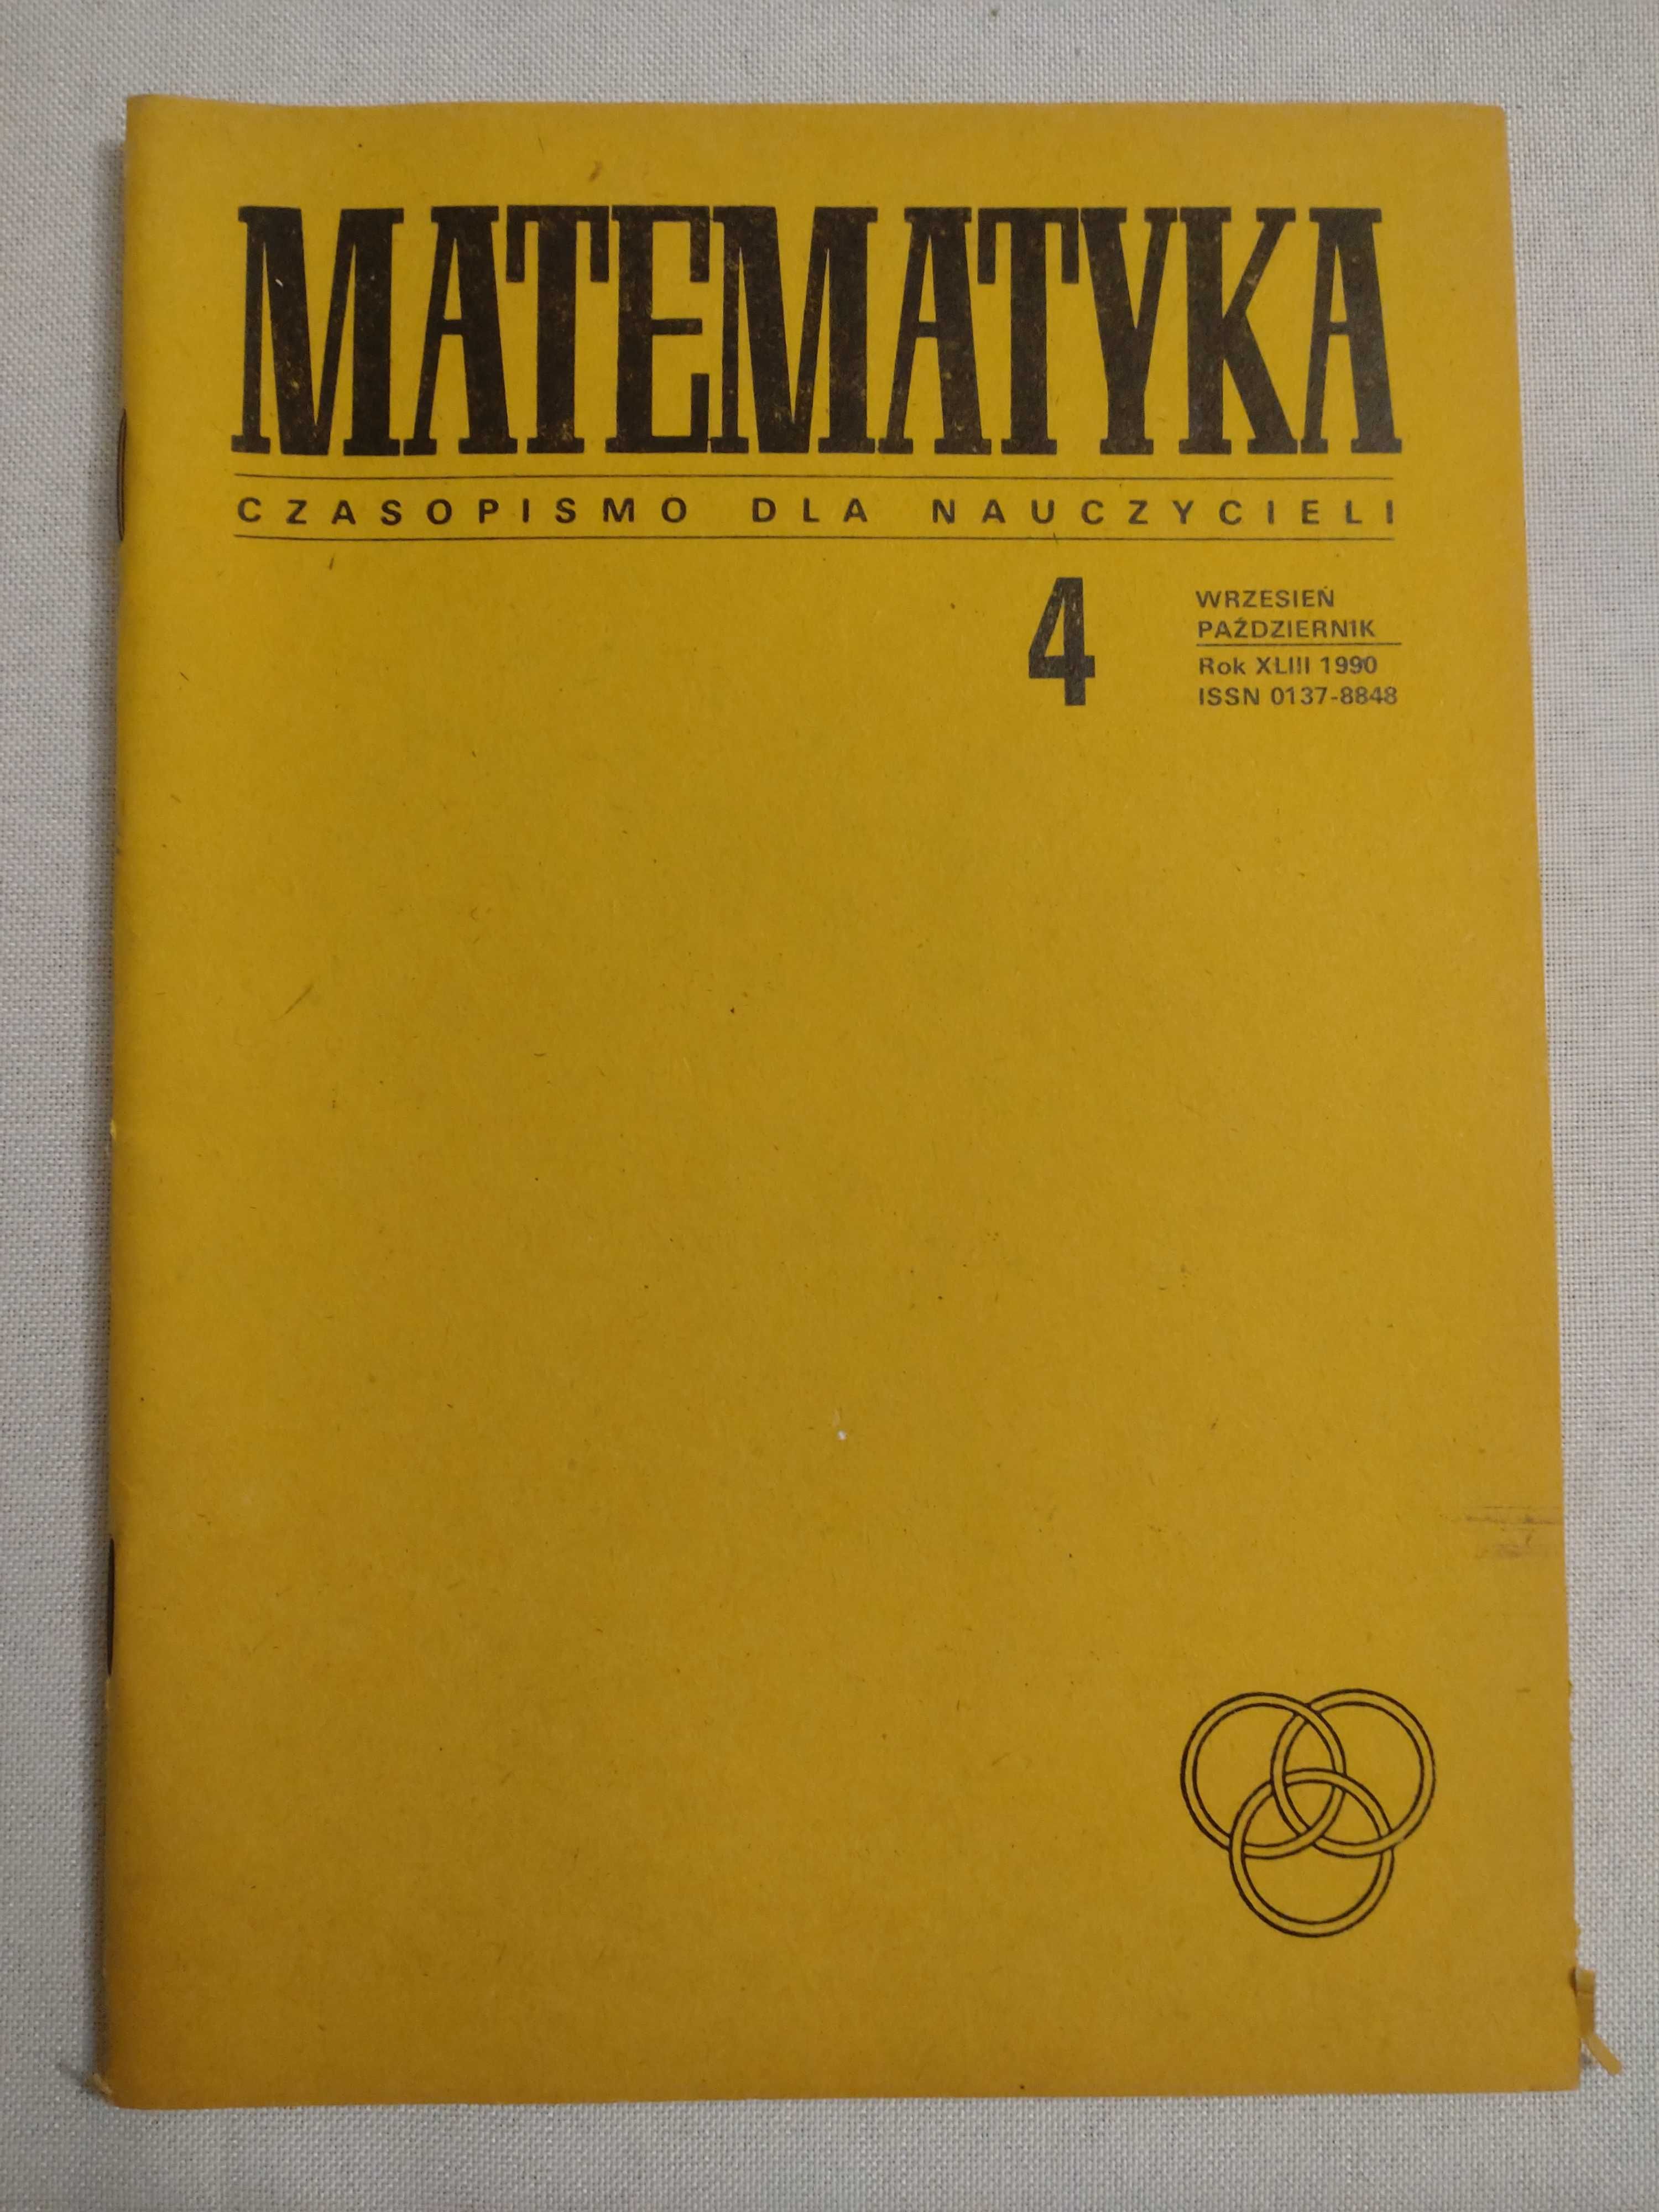 Czasopismo dla nauczycieli - matematyka 1990